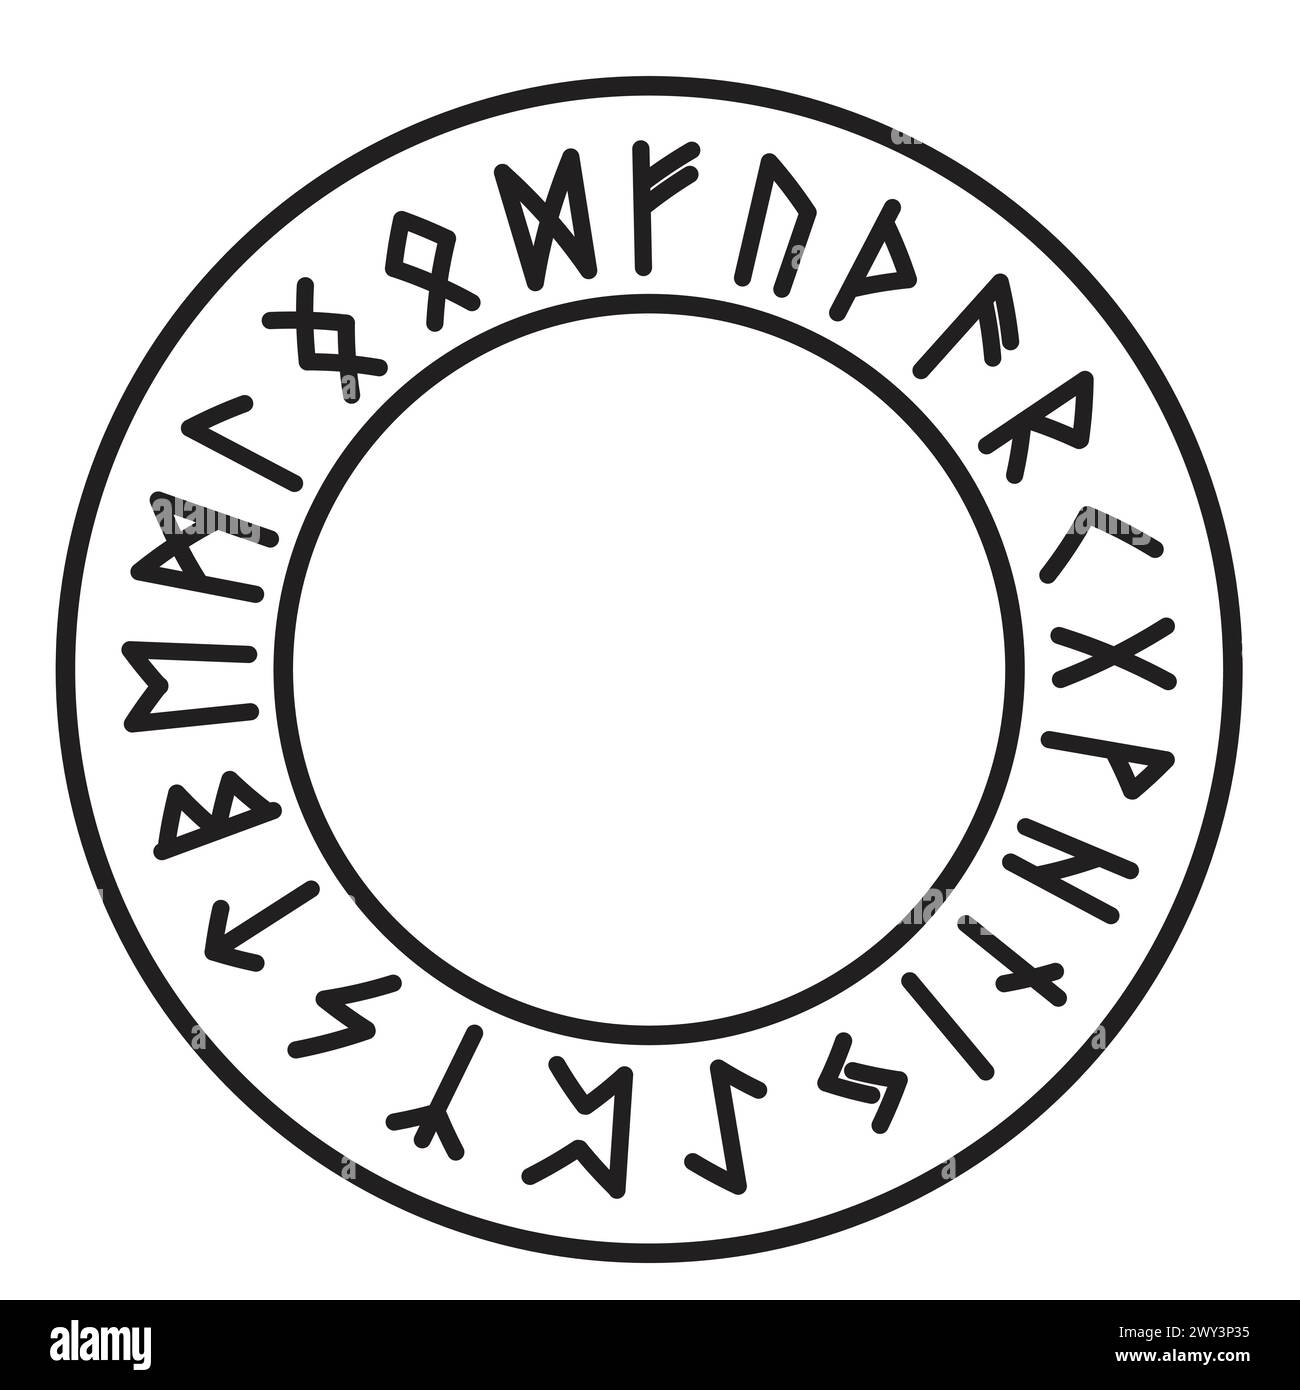 Runenkreis isländischer keltischer wikinger-Talisman Navigation Kompass, Rahmen okkultes Amulett, stammesnordische Schrift isoliert auf weißem Hintergrund. Vektorabbildung Stock Vektor